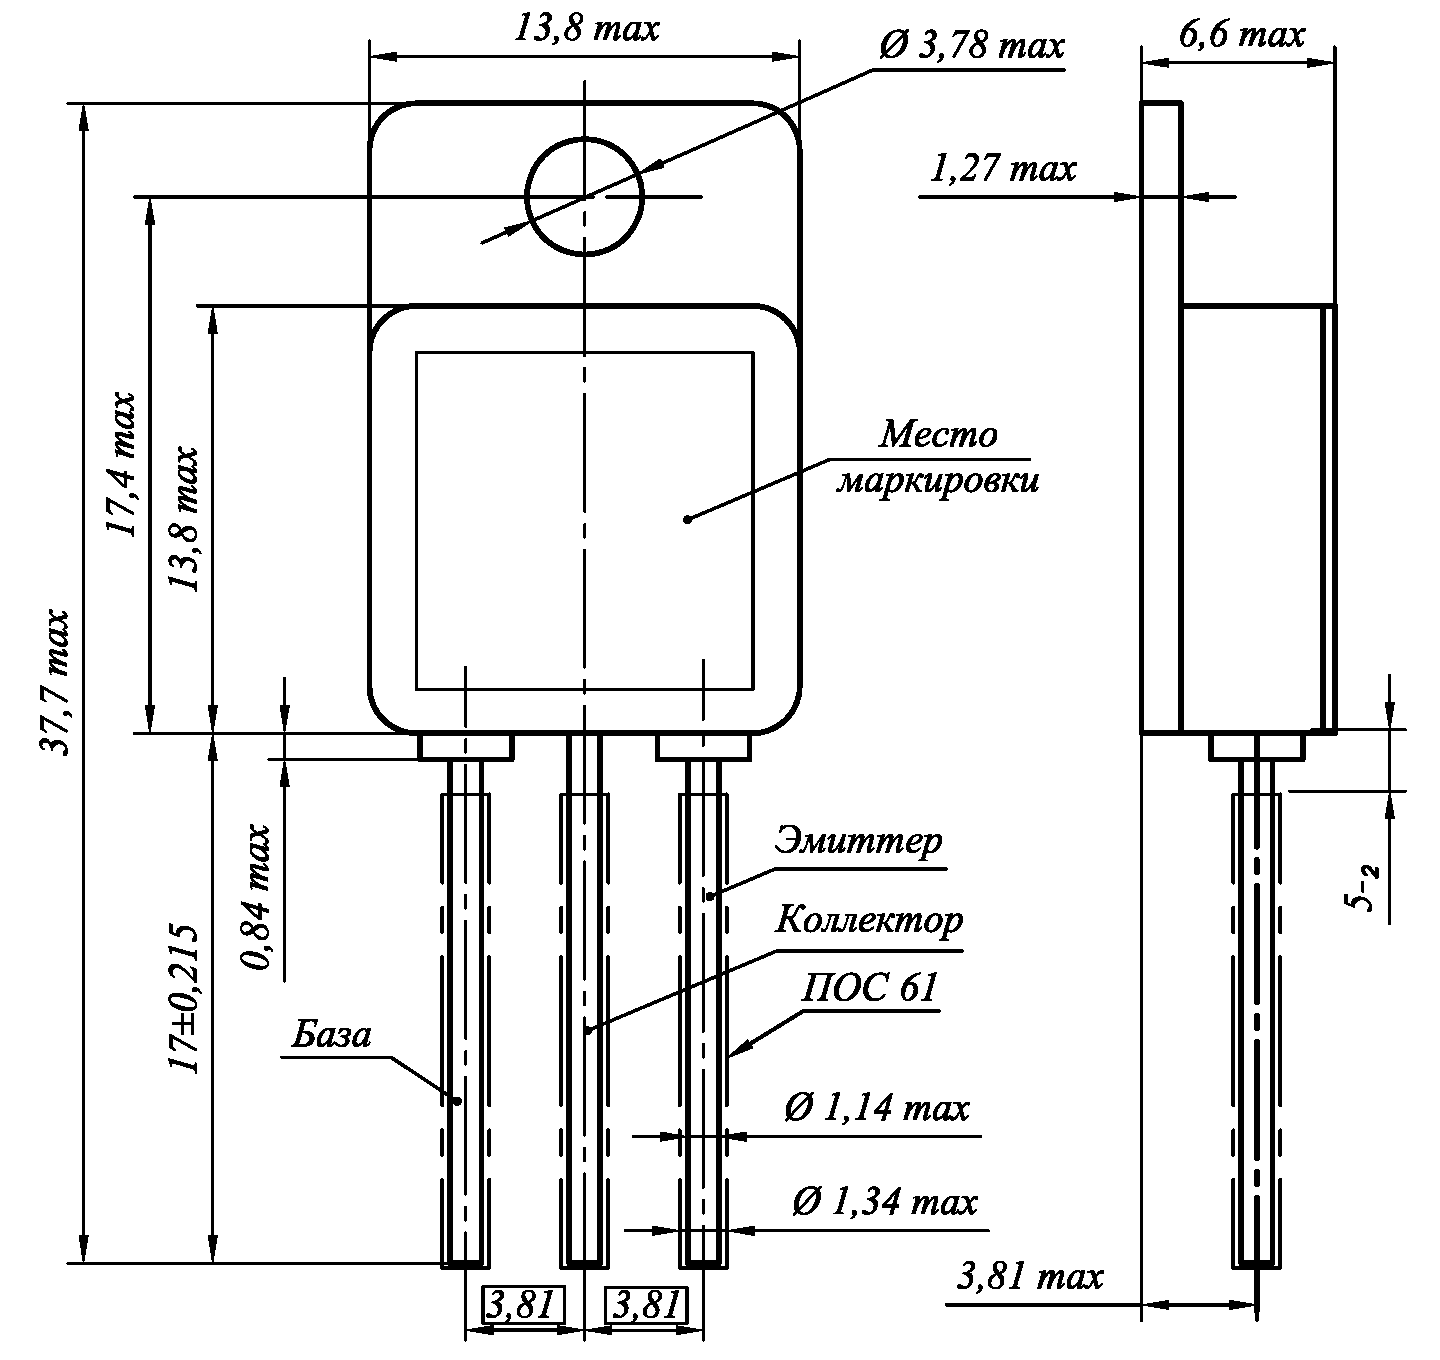 Габаритный чертеж транзисторов 2Т827 в корпусах типа КТ-97